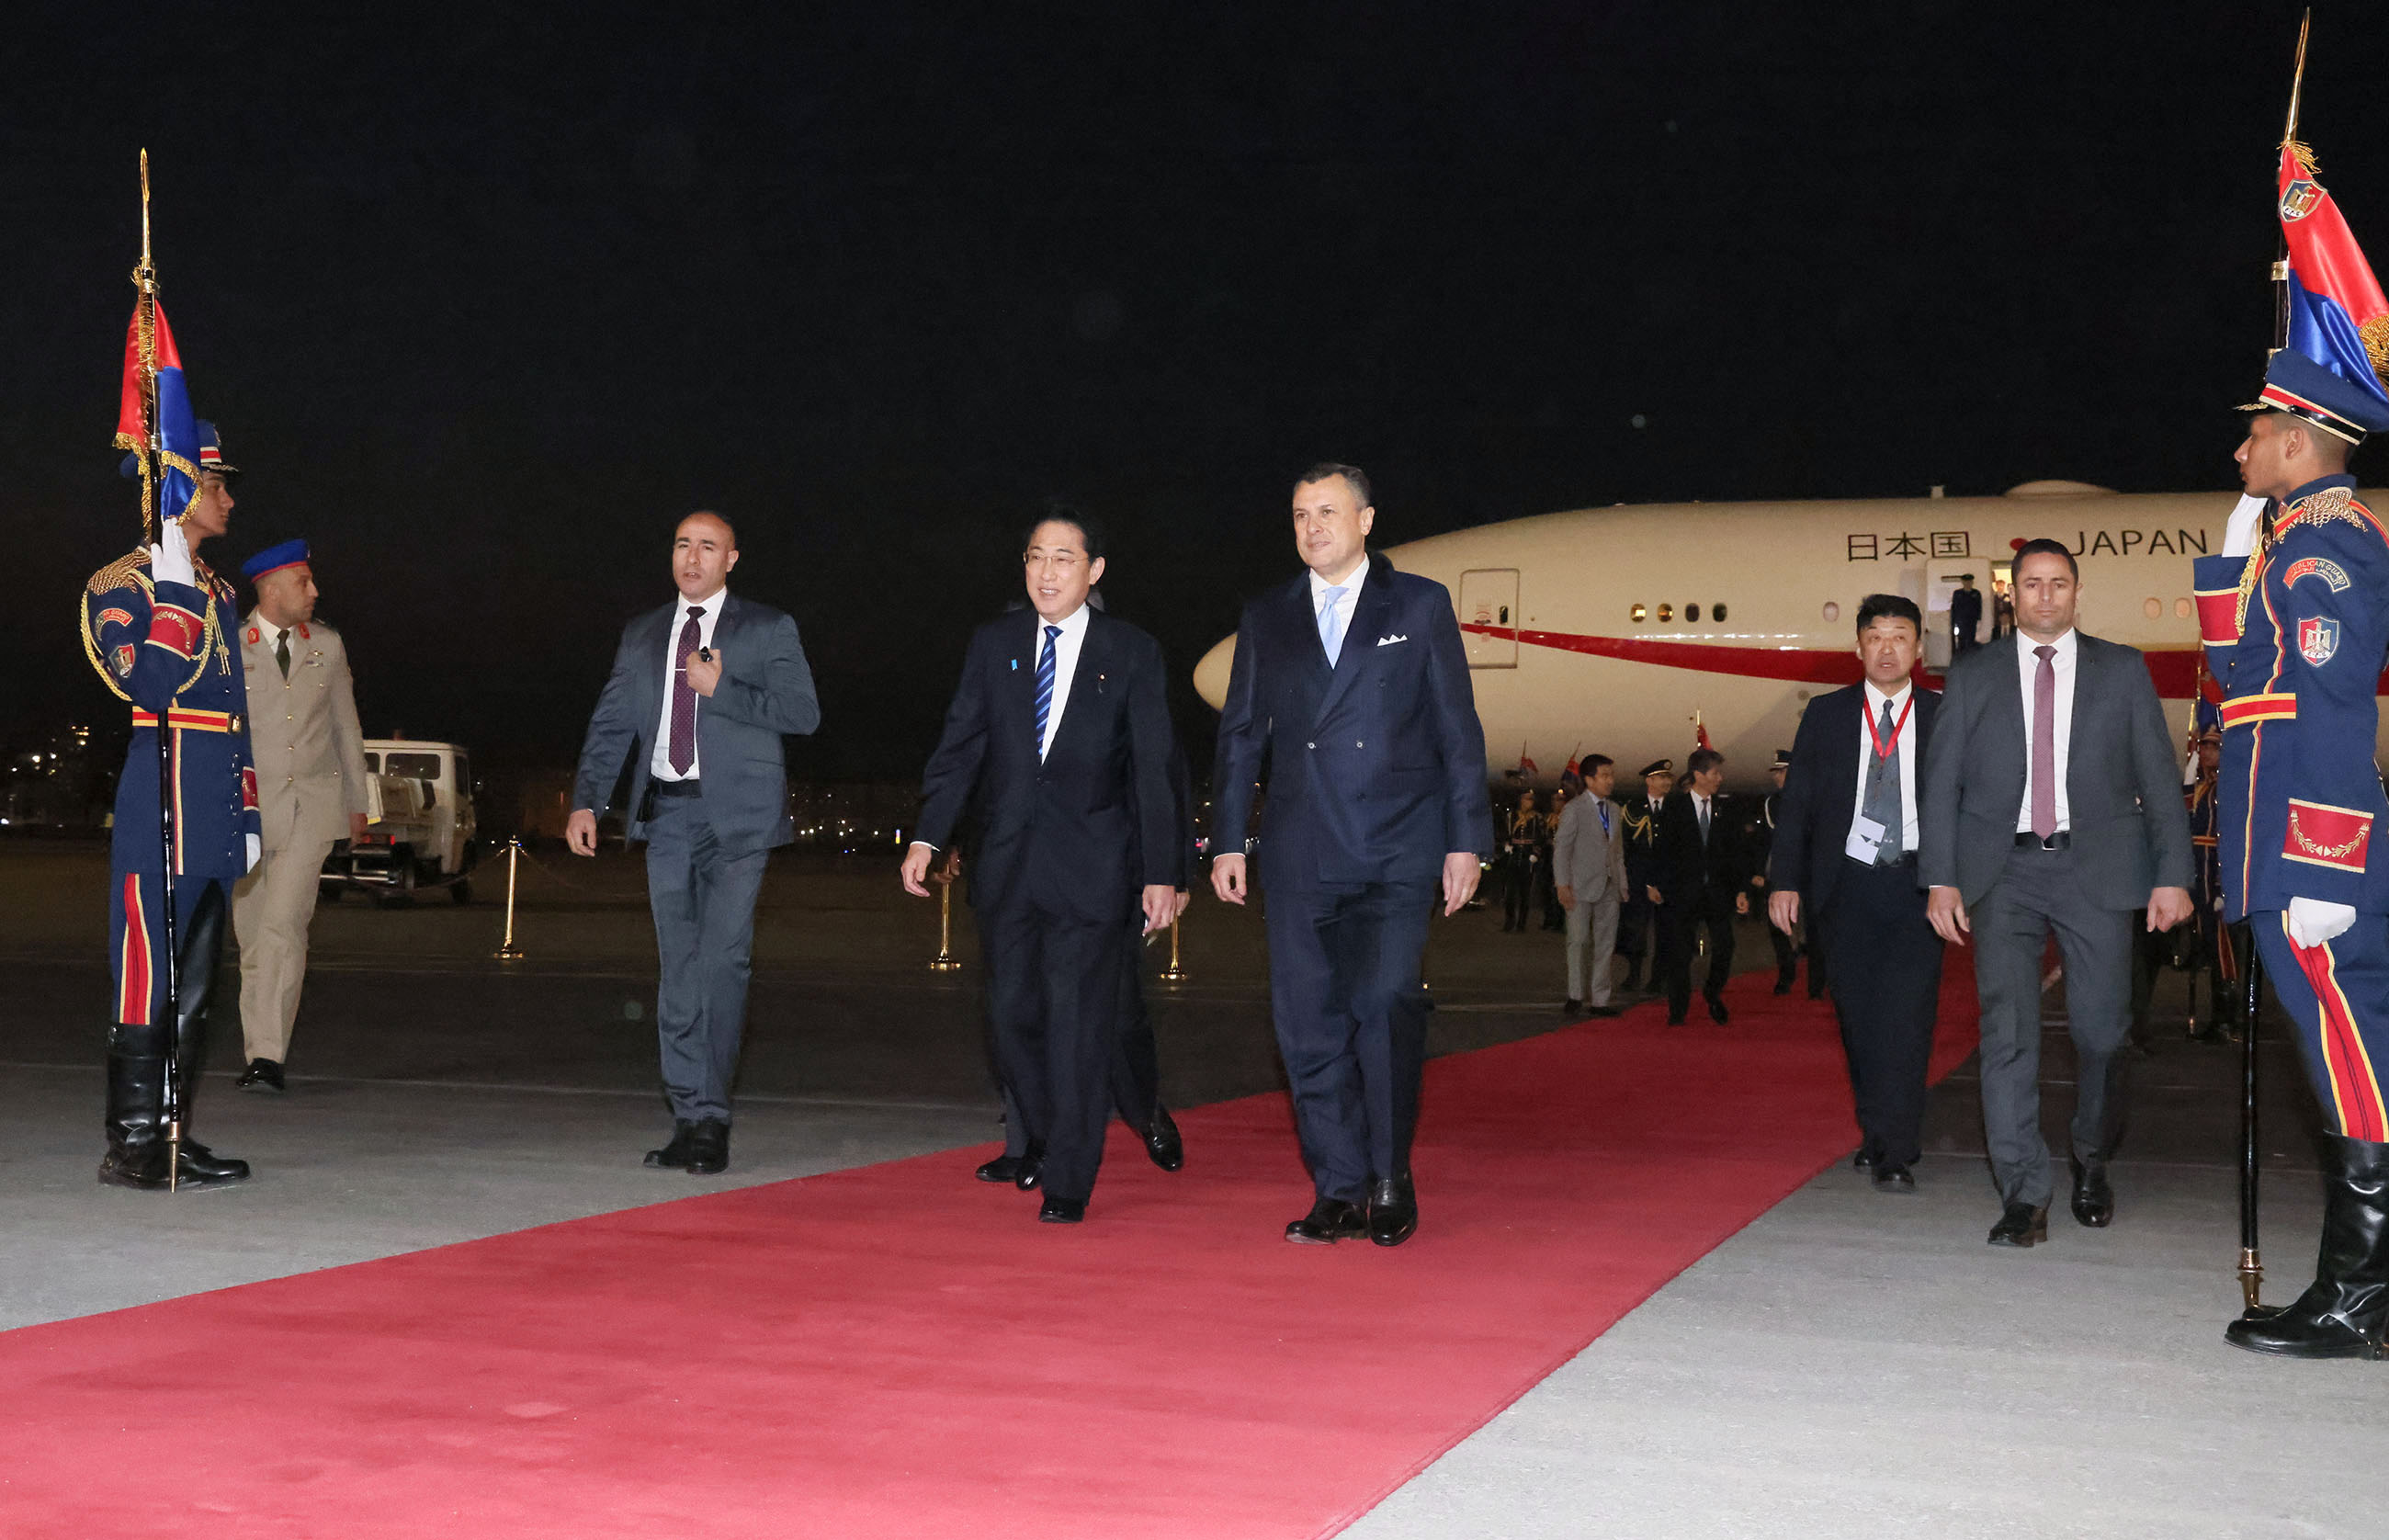 Prime Minister Kishida arriving in Egypt